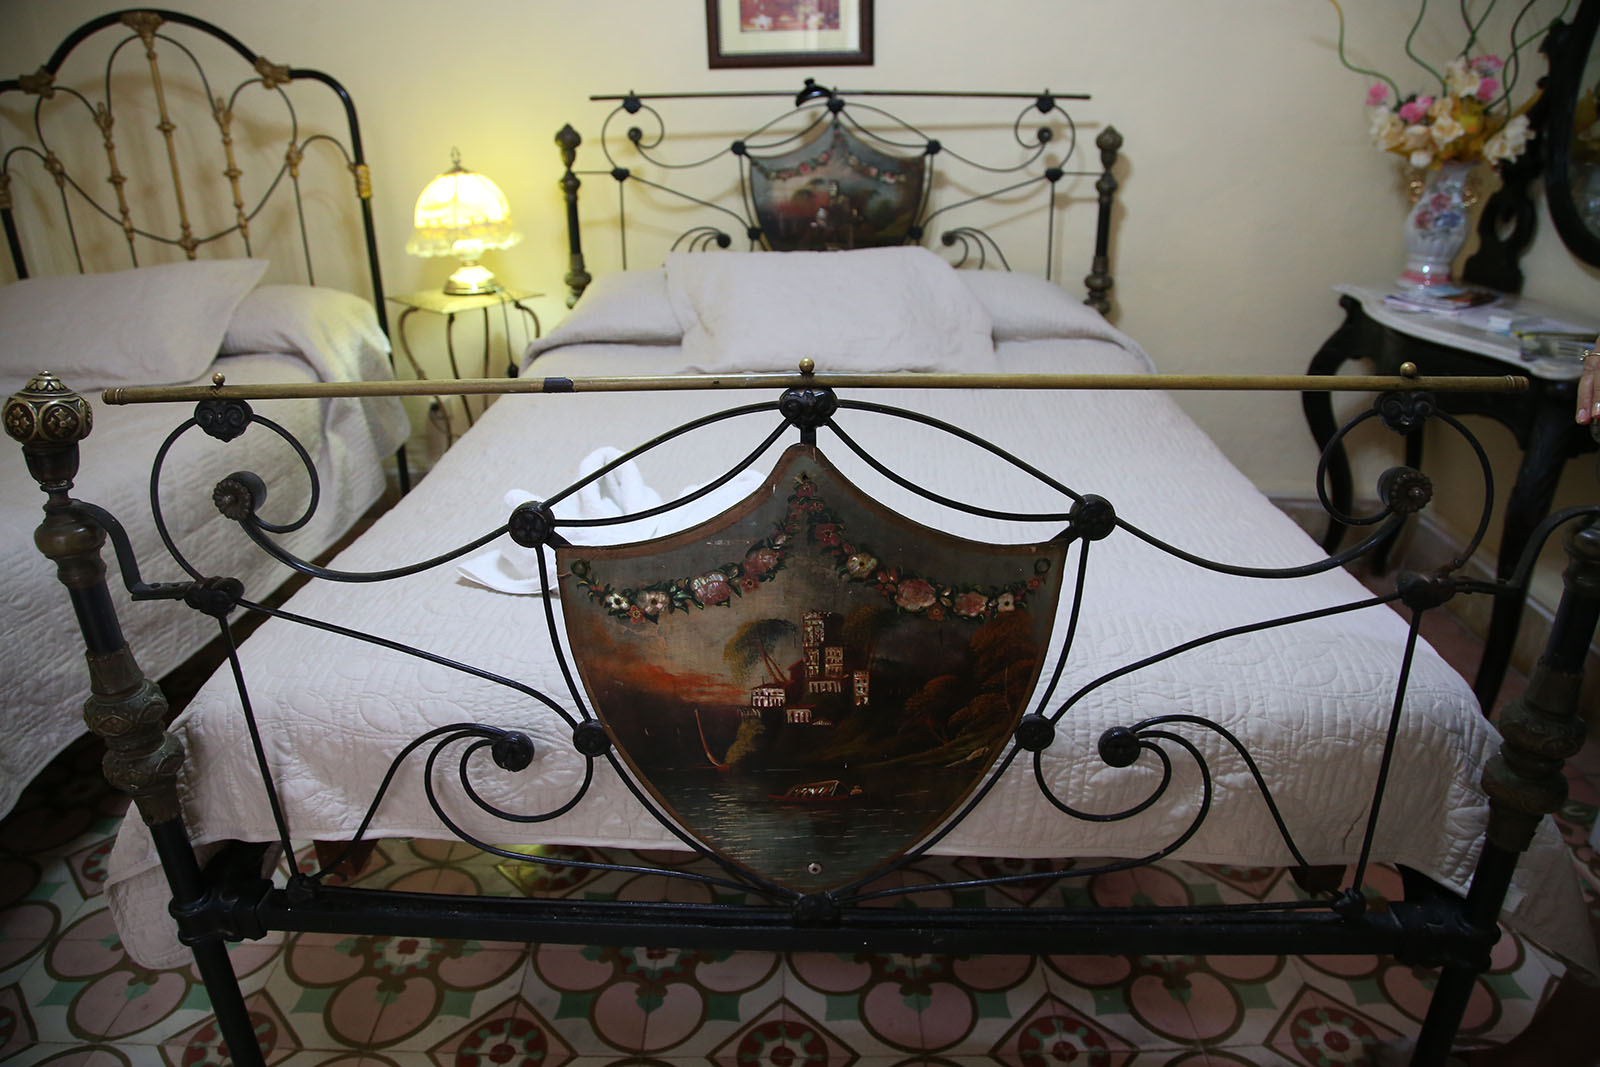 쿠바가 스페인의 지배를 받던 시절부터 사용했다는 침대.